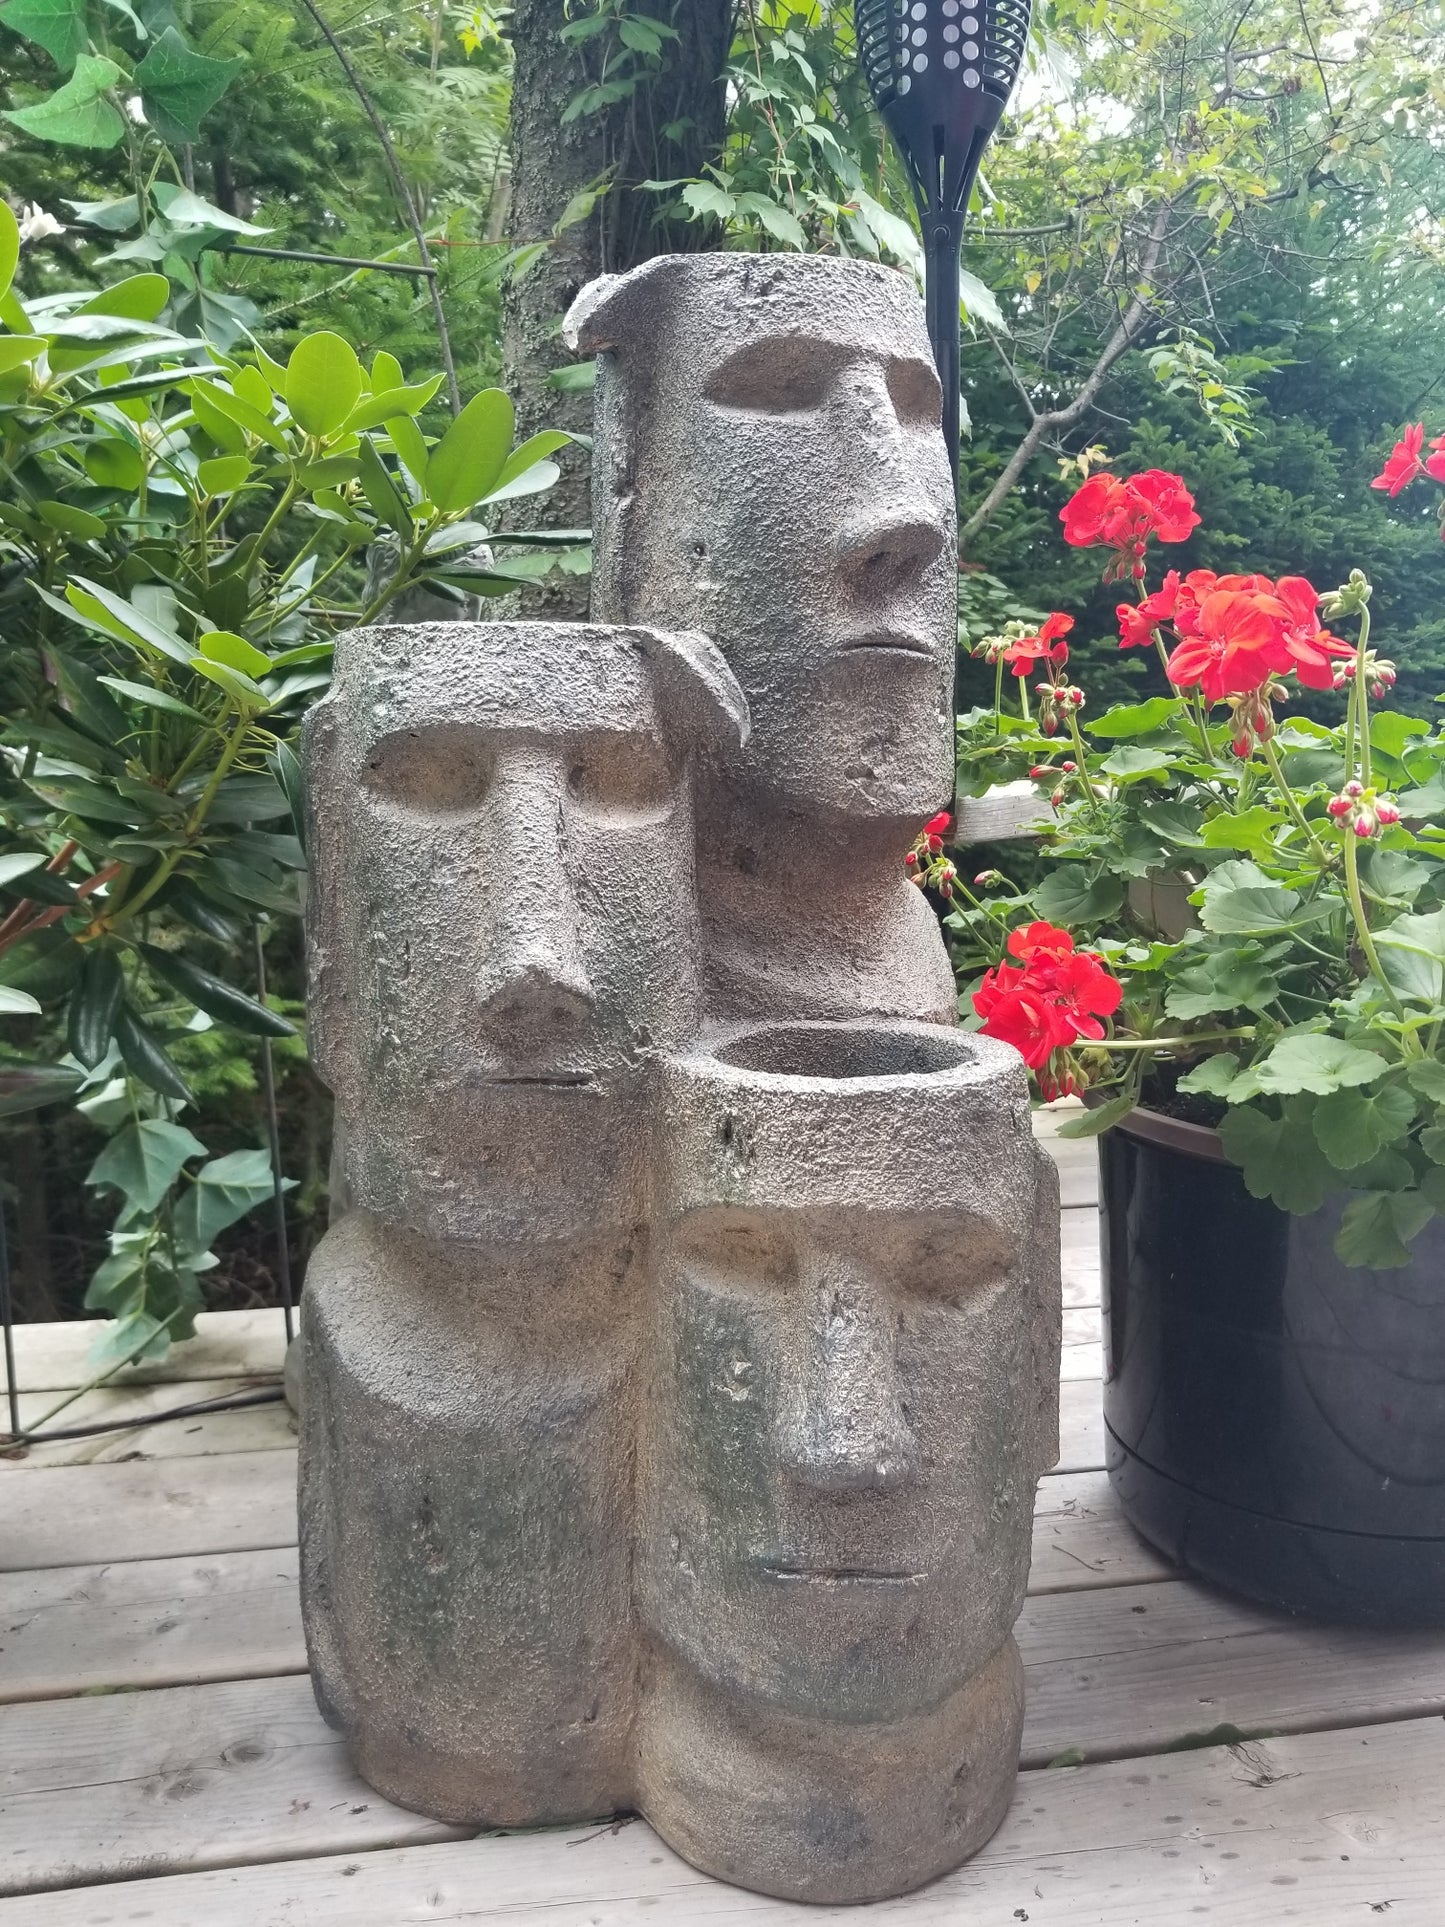 Easter island head cascading fountain for sale